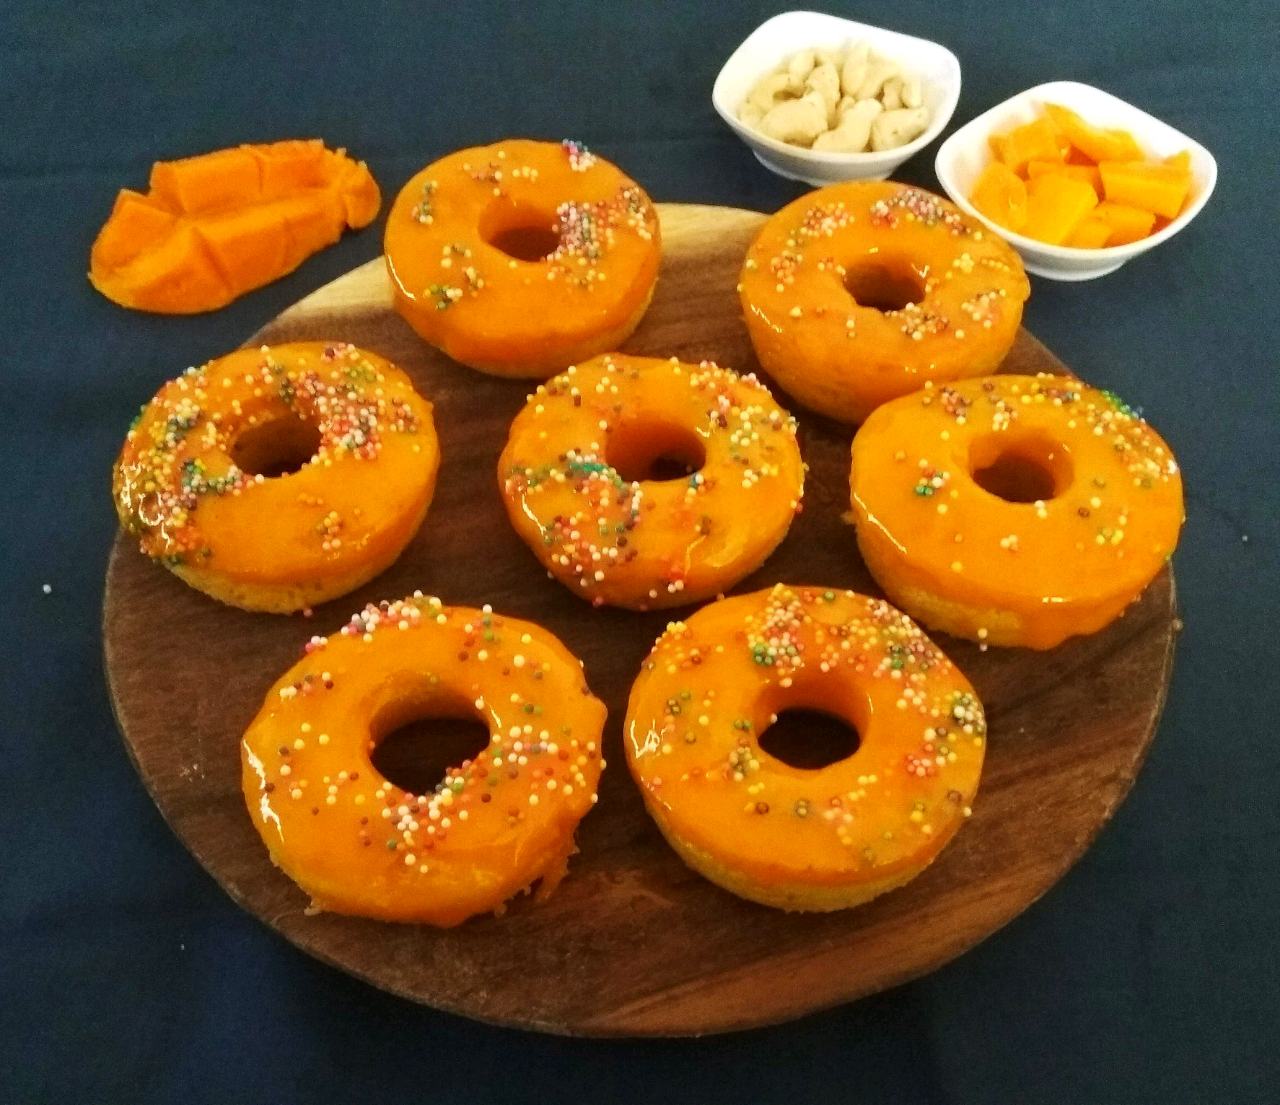 Baked Mango Donuts With Mango Glaze